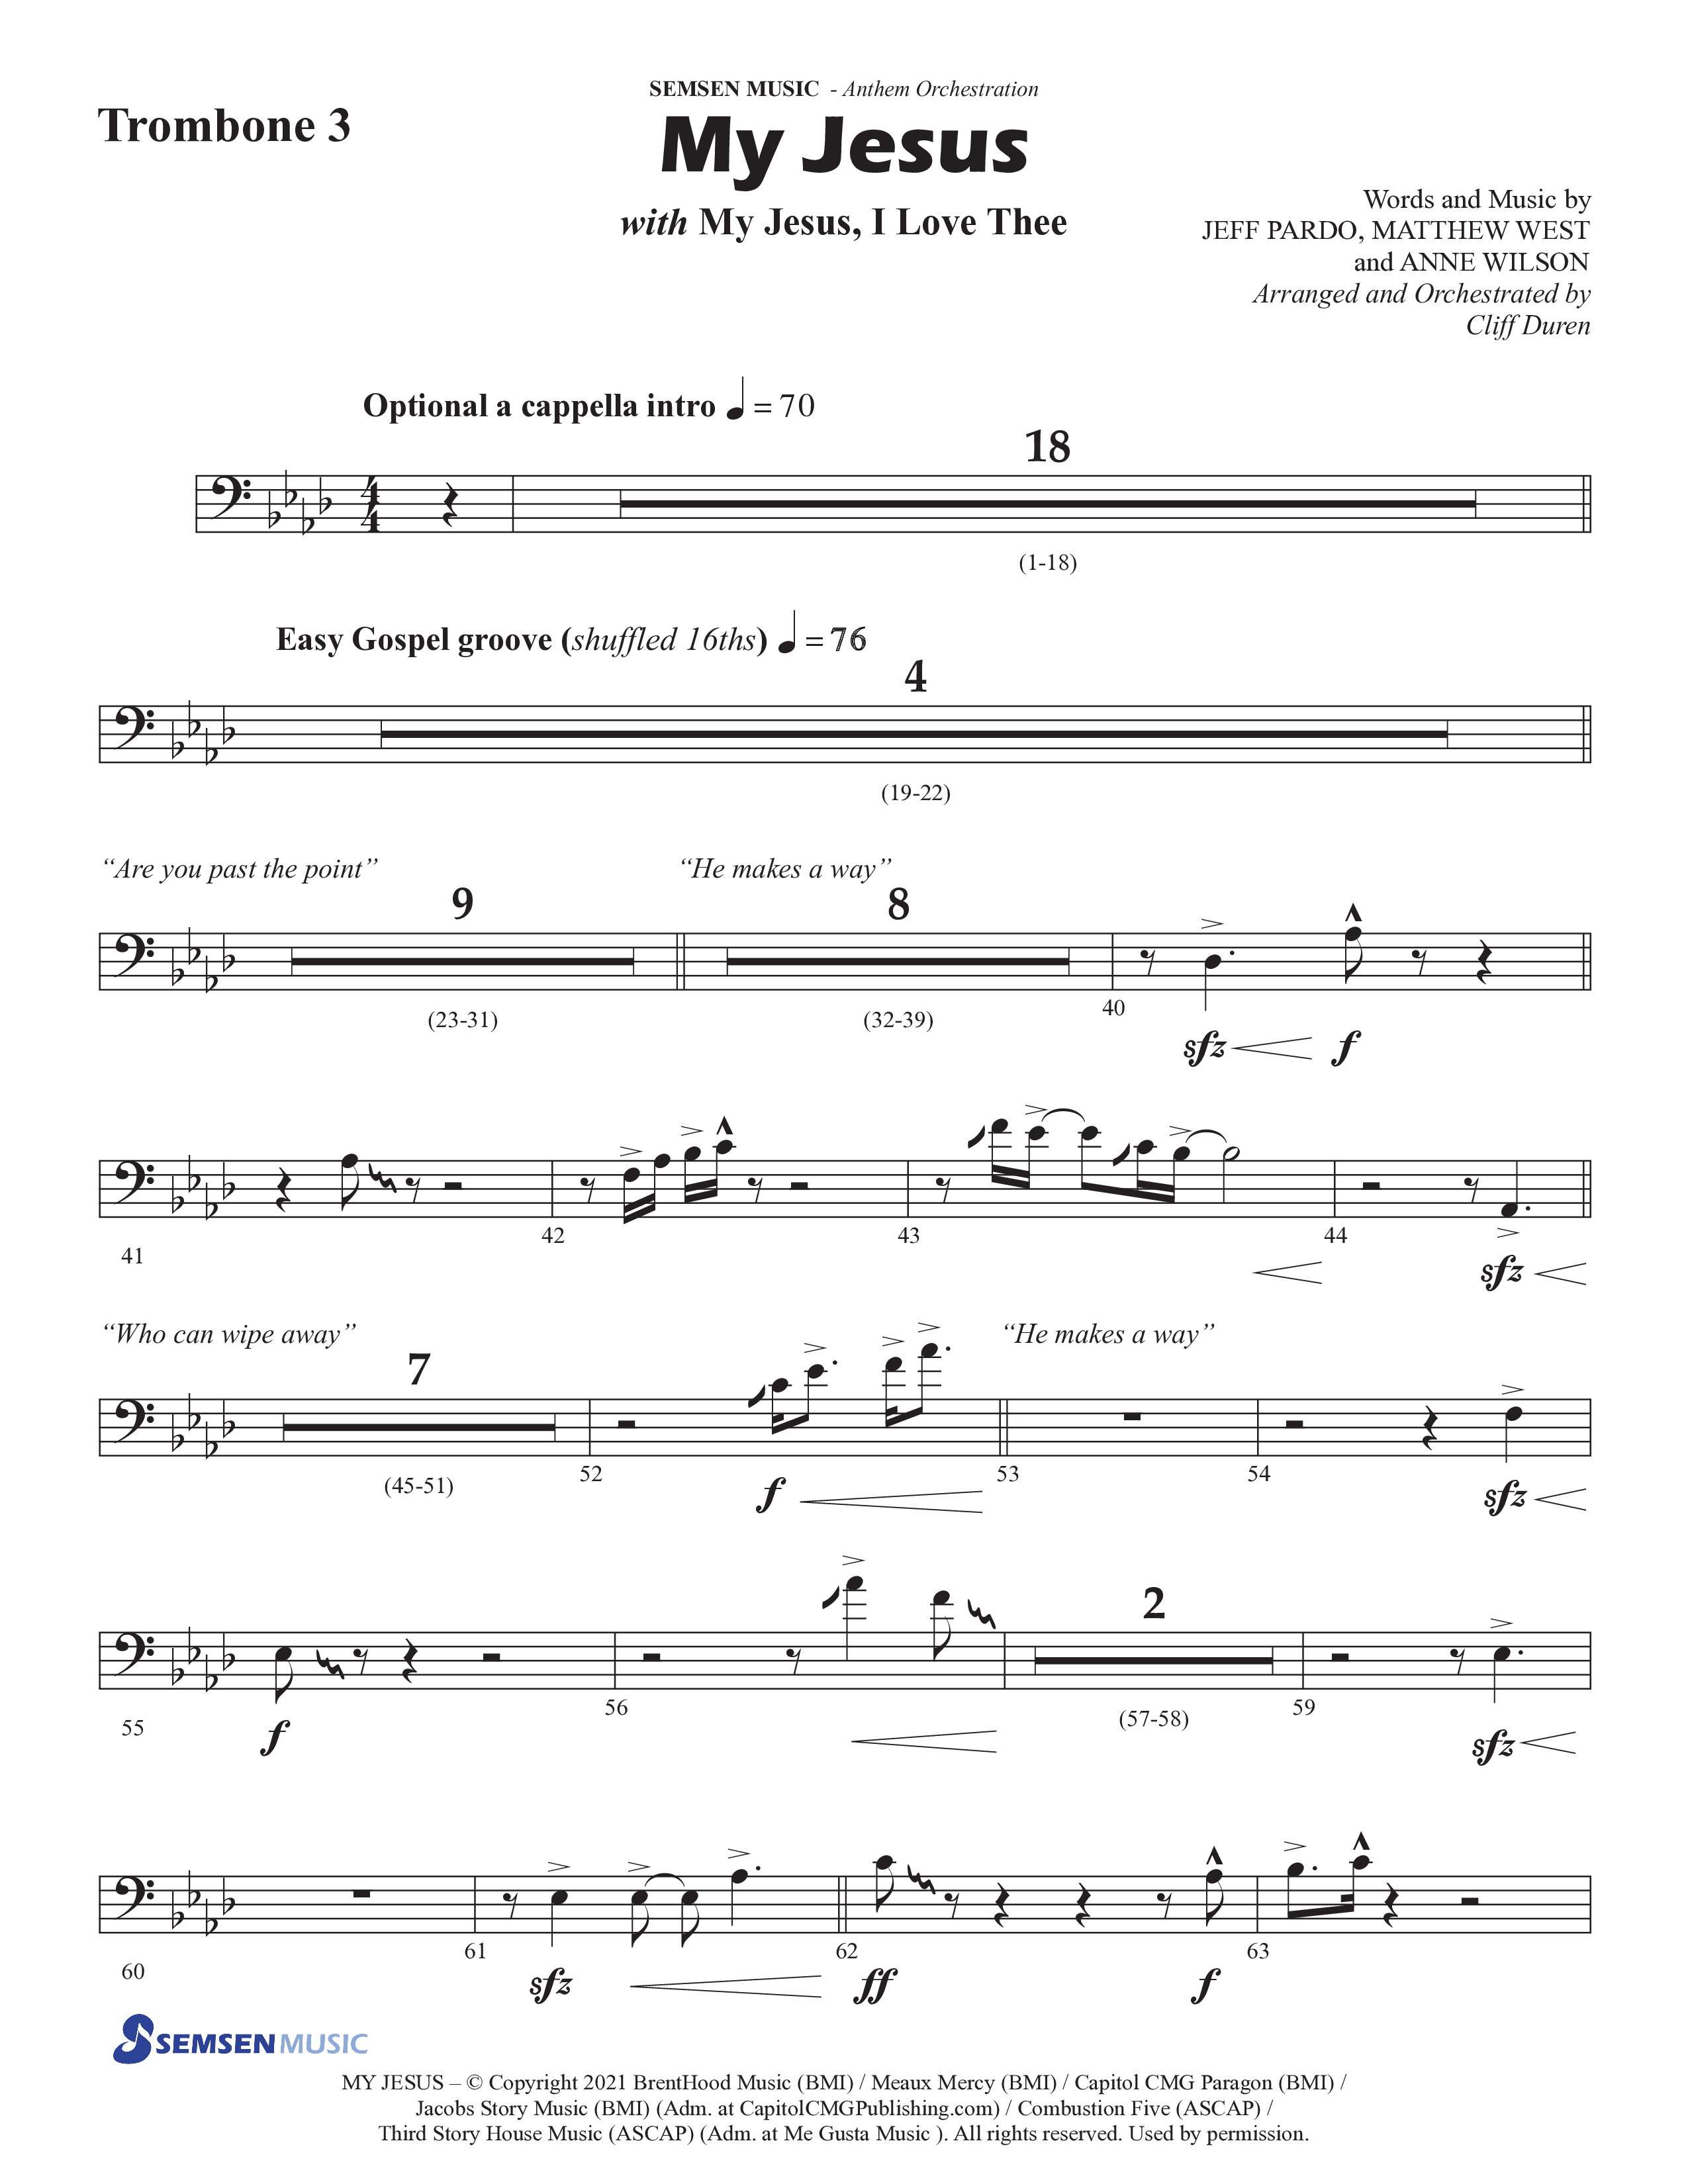 My Jesus (with My Jesus I Love Thee) (Choral Anthem SATB) Trombone 3 (Semsen Music / Arr. Cliff Duren)